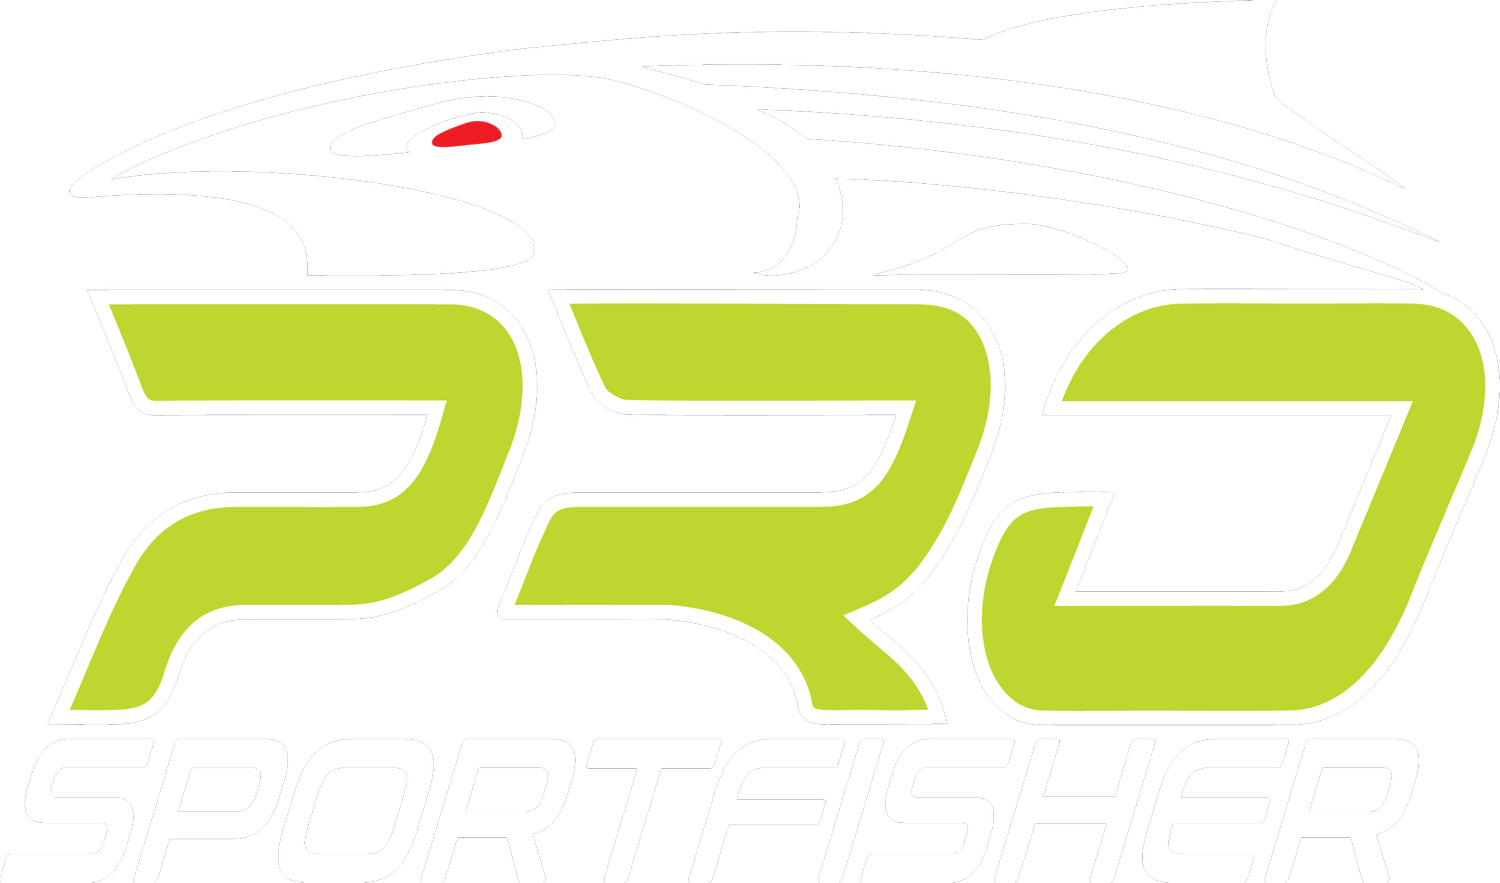 Pro Sportfisher